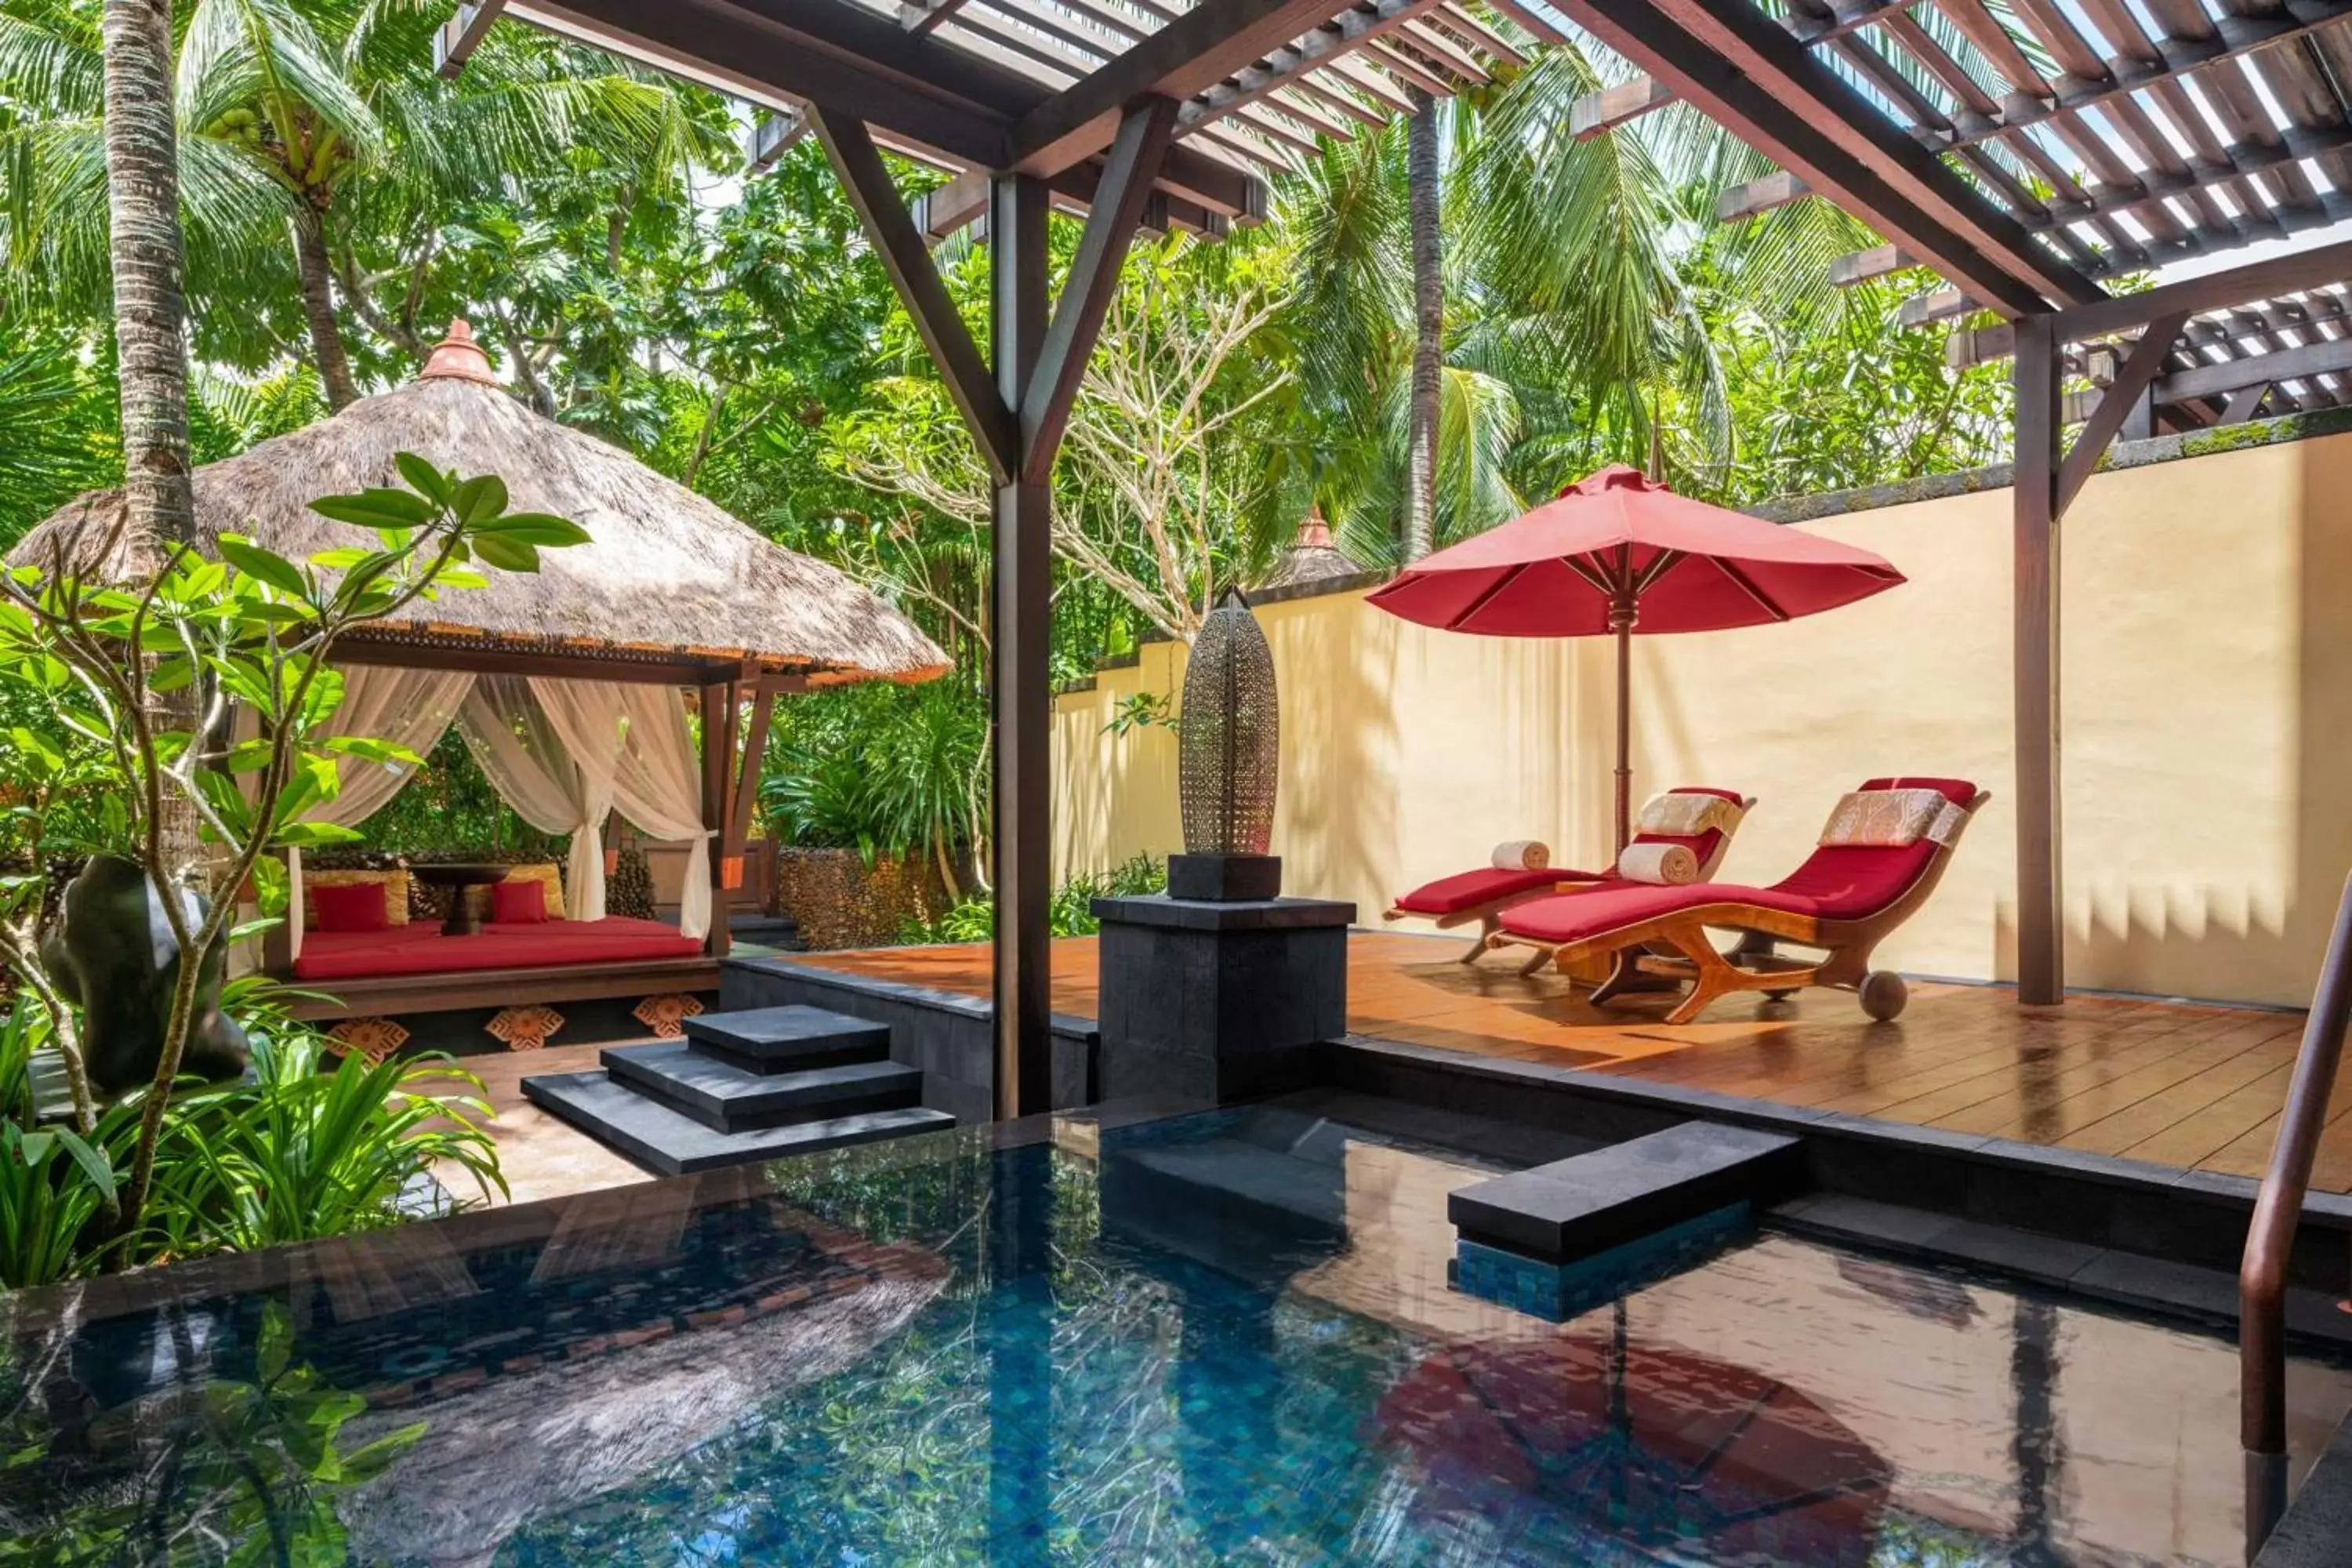 Swimming Pool in The St. Regis Bali Resort